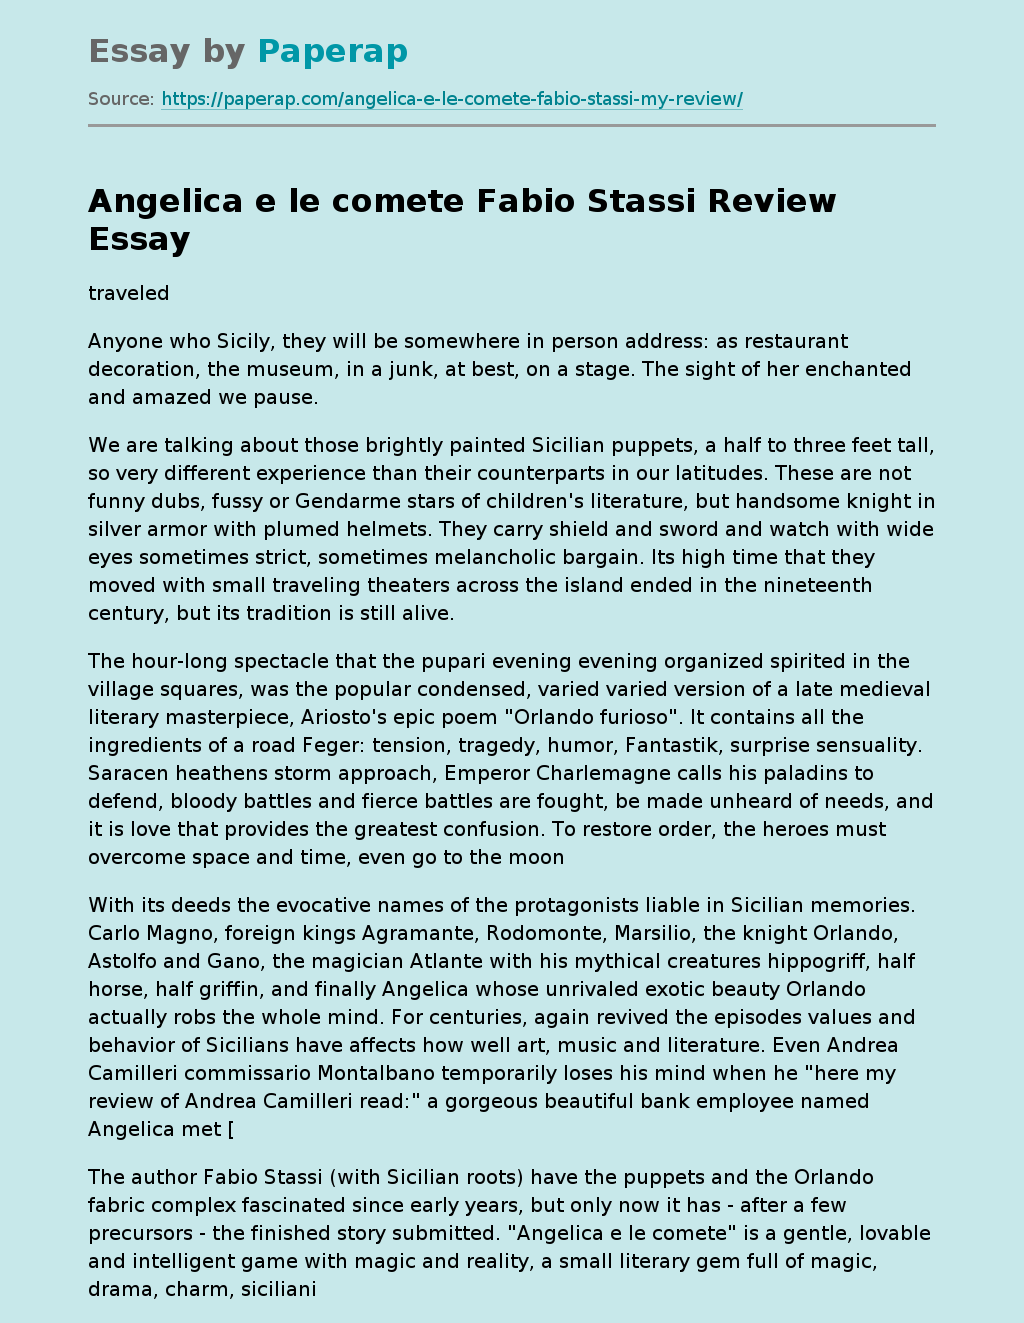 Angelica e le Comete Fabio Stassi Review